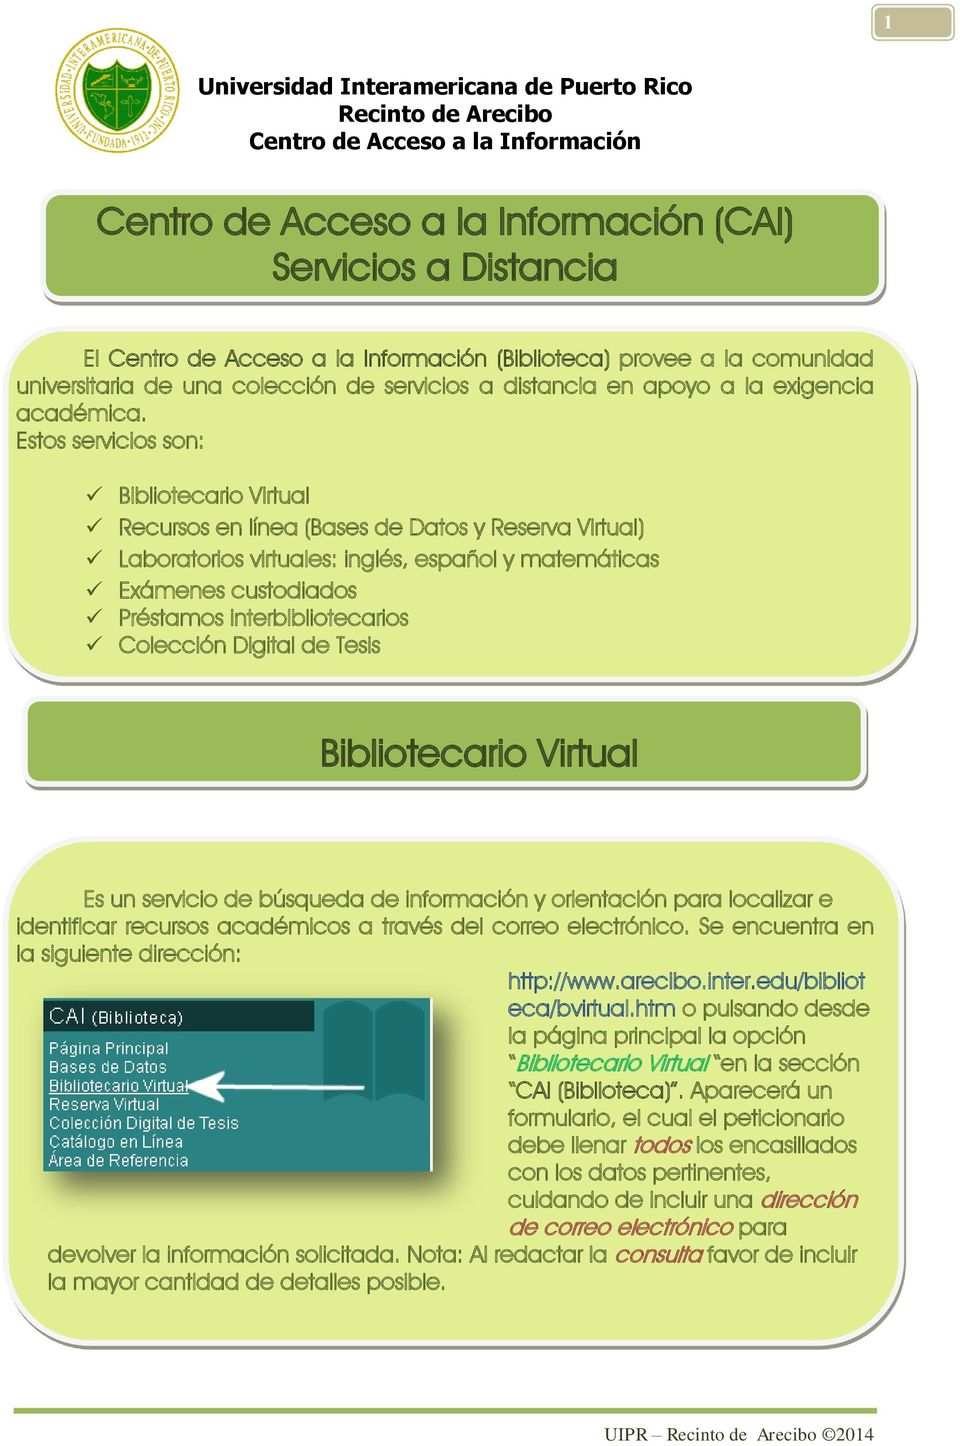 Estos servicios son: Bibliotecario Virtual Recursos en línea (Bases de Datos y Reserva Virtual) Laboratorios virtuales: inglés, español y matemáticas Exámenes custodiados Préstamos